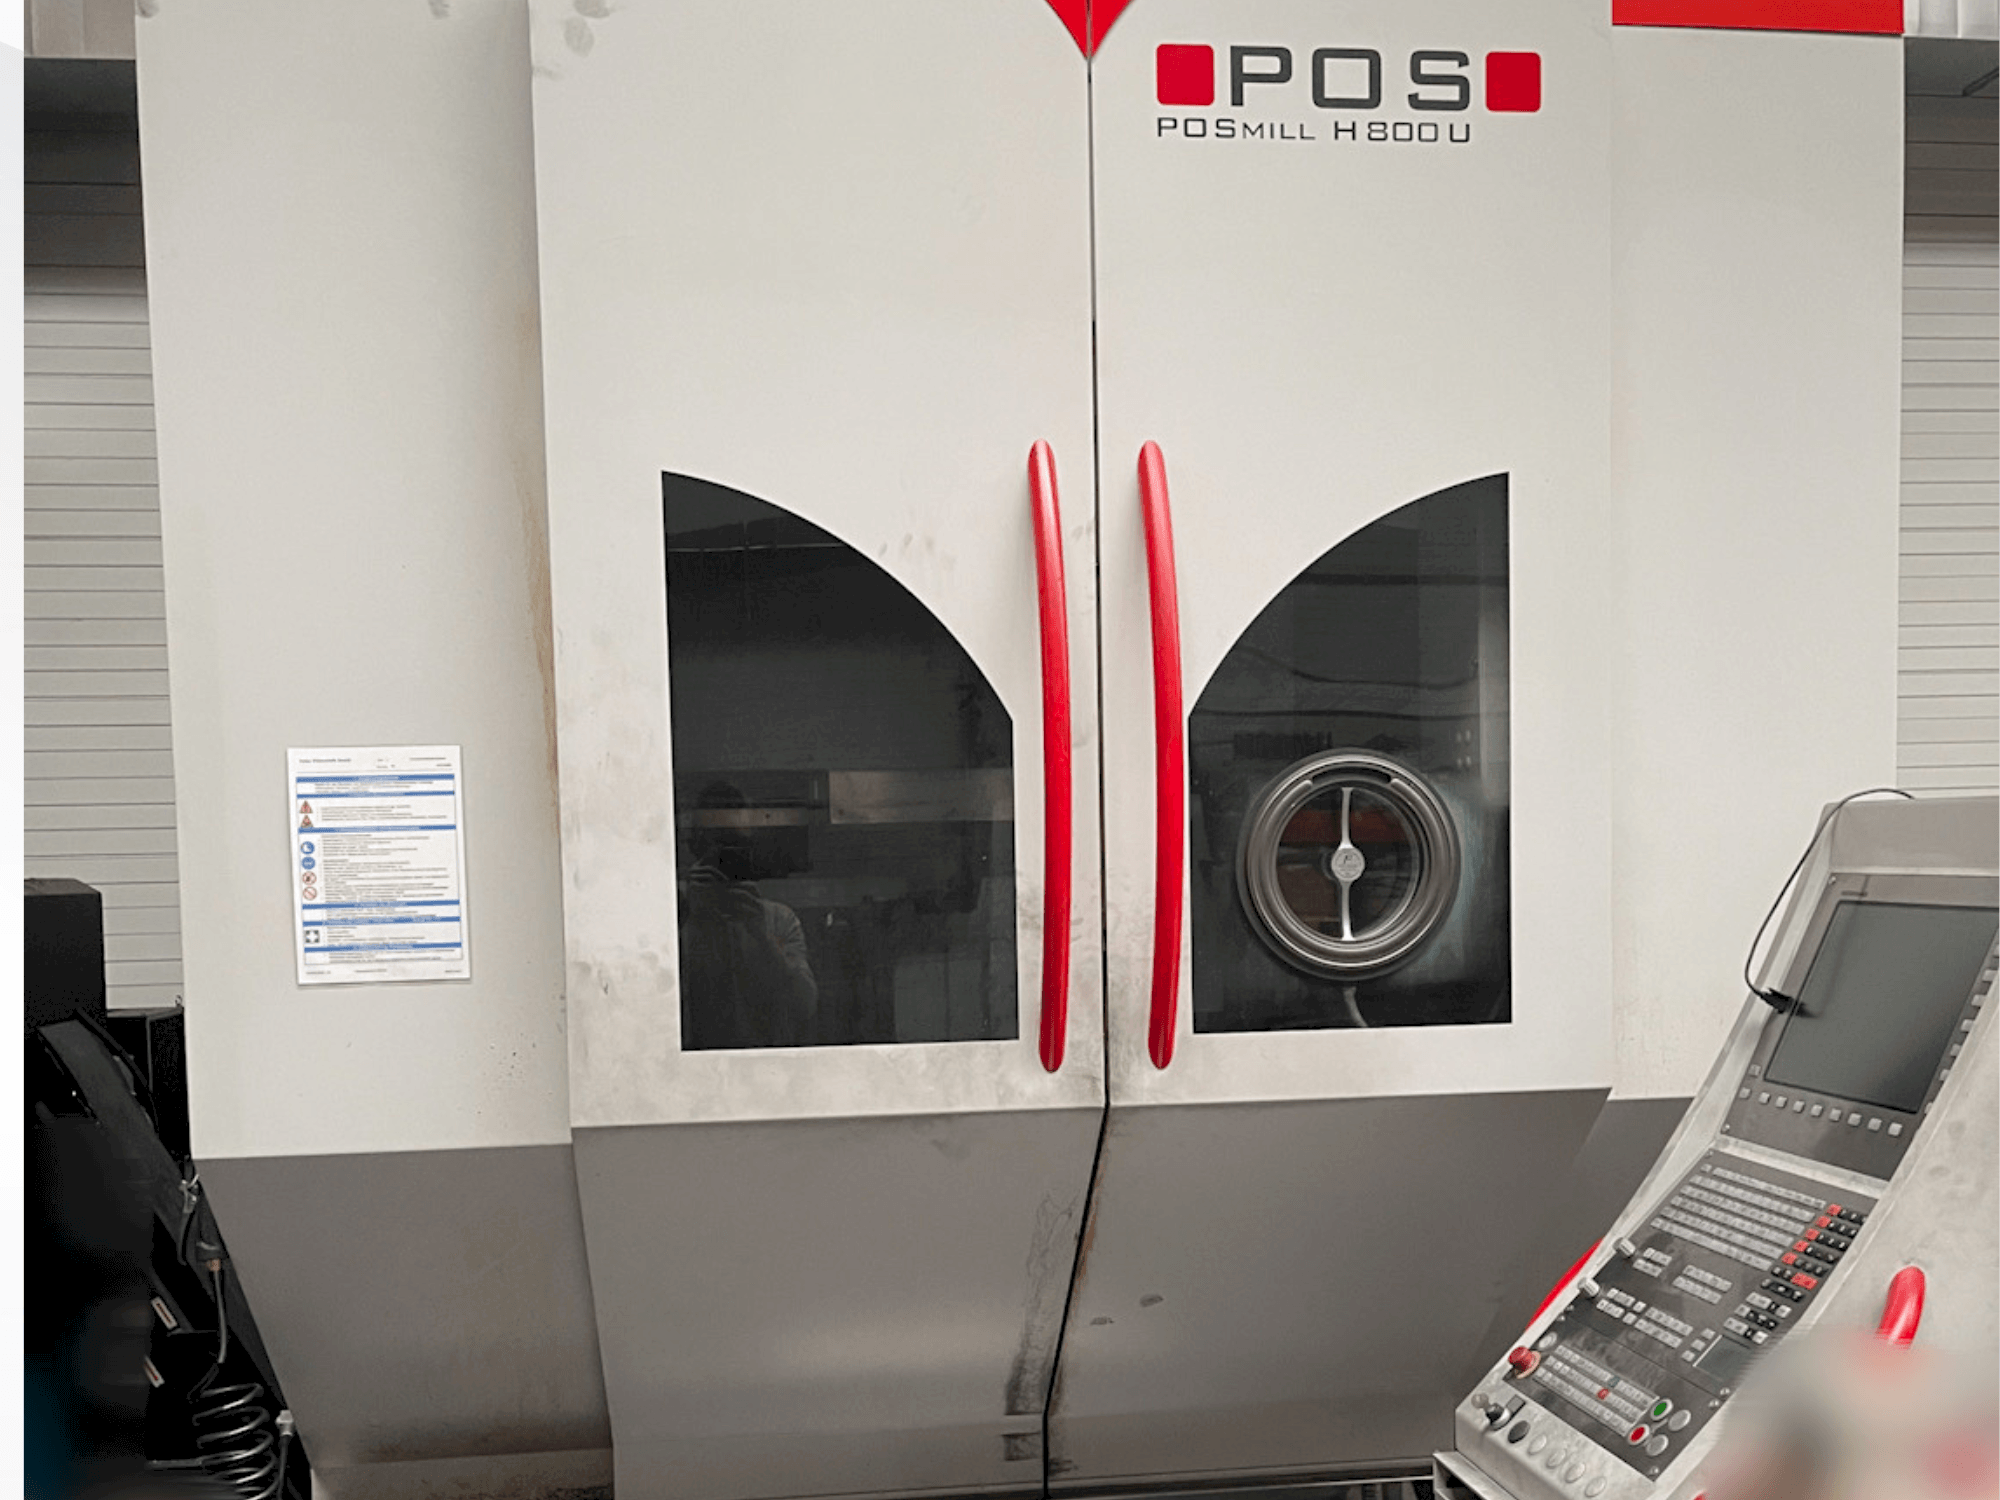 Vista frontal de la máquina POSmill H800U